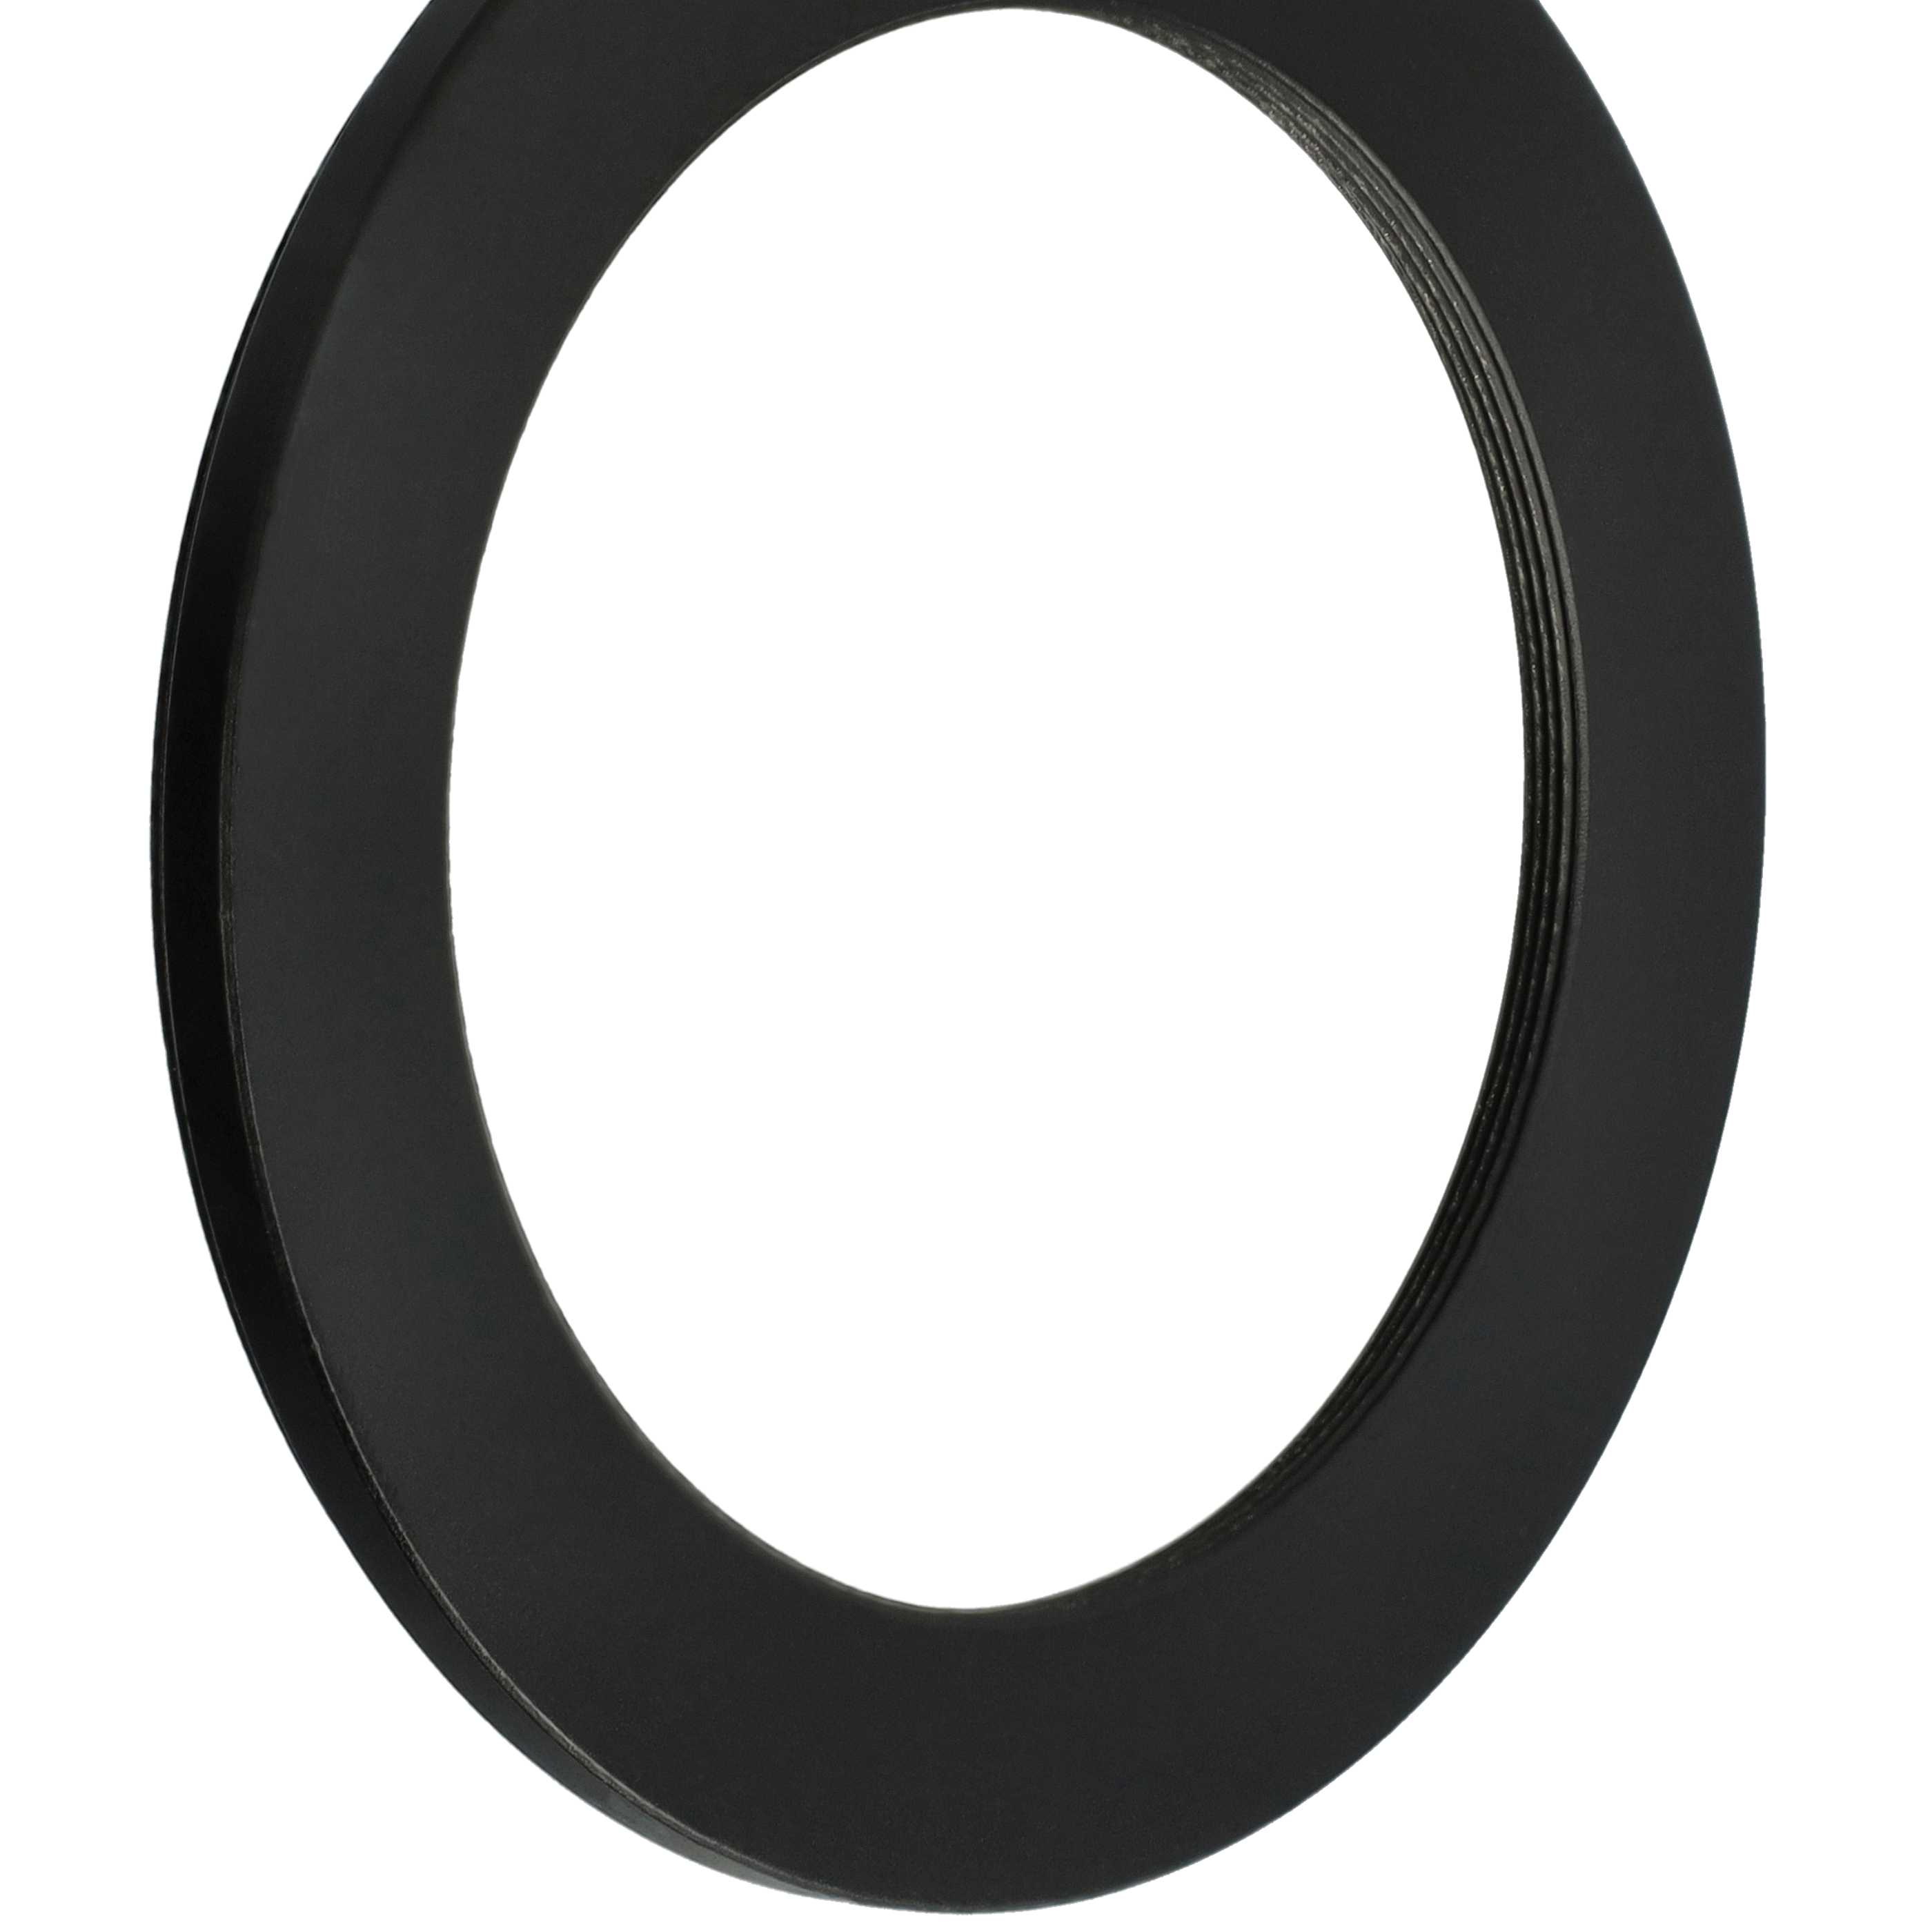 Anello adattatore step-down da 82 mm a 62 mm per obiettivo fotocamera - Adattatore filtro, metallo, nero